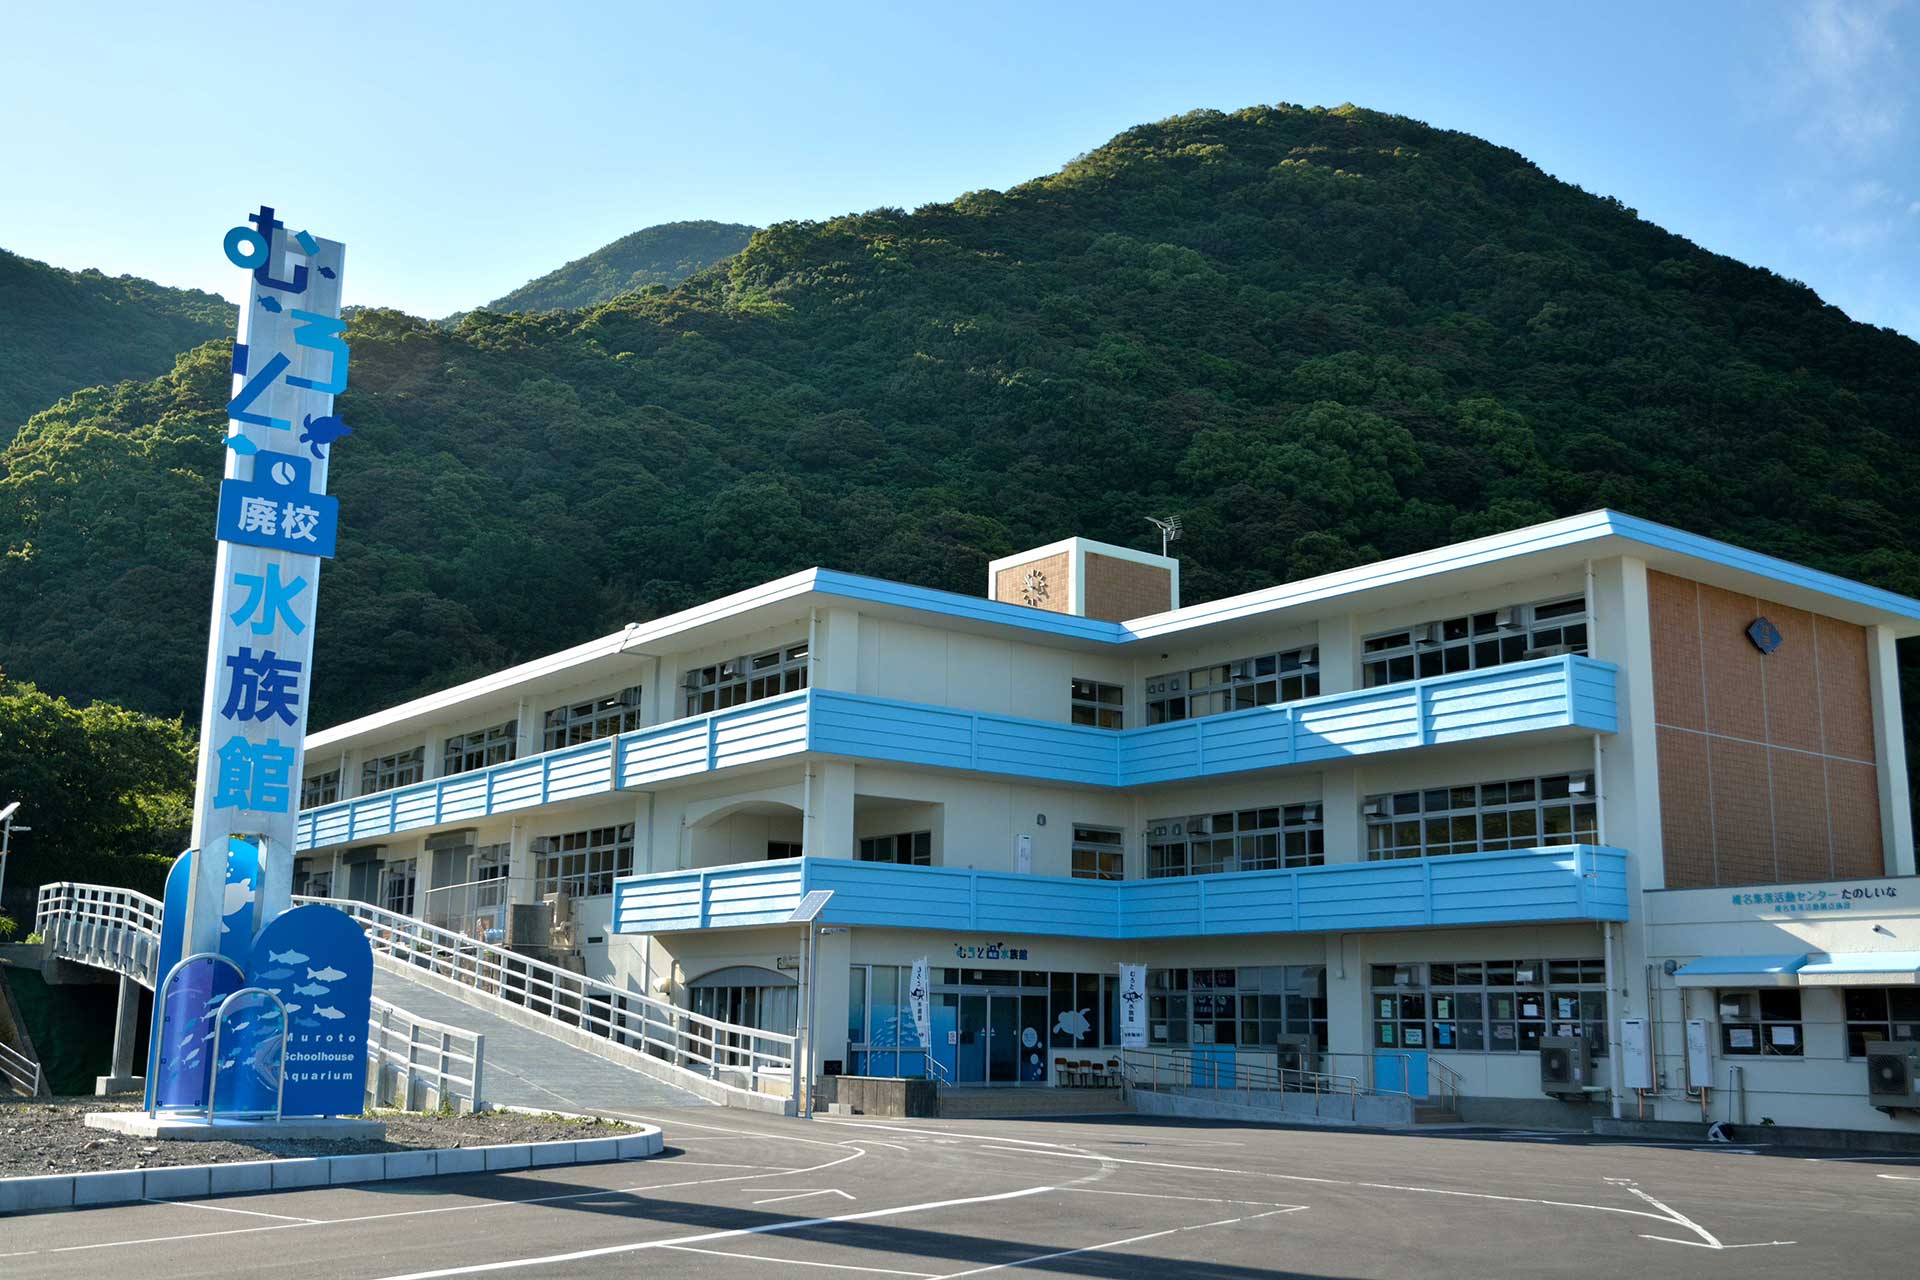 Popular Aquarium Introduces Only Local Marine Life, Utilizing a Closed School Building